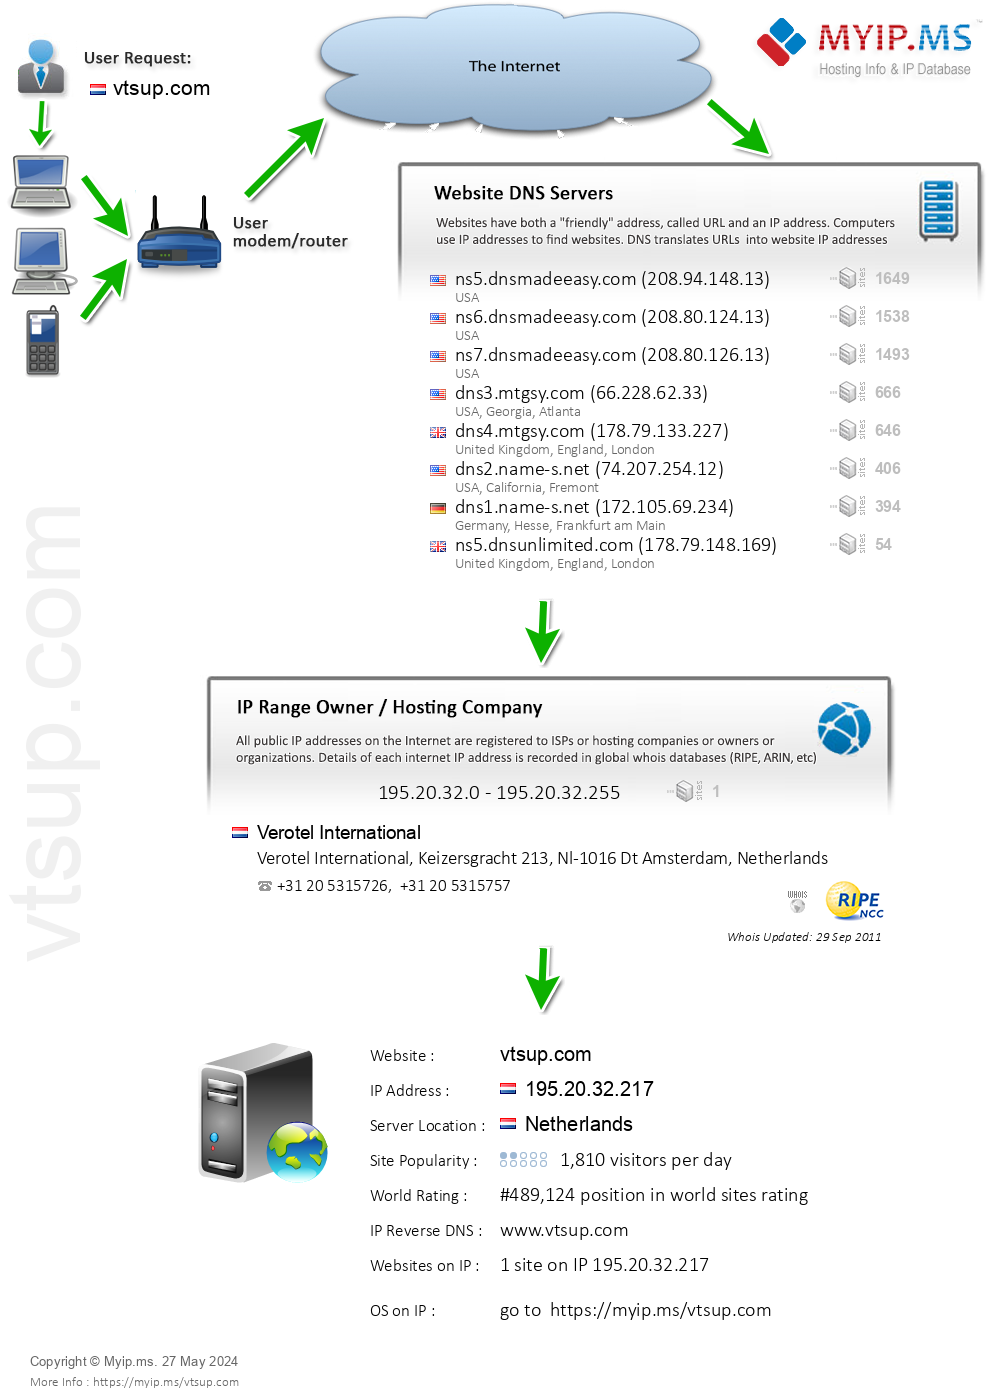 Vtsup.com - Website Hosting Visual IP Diagram